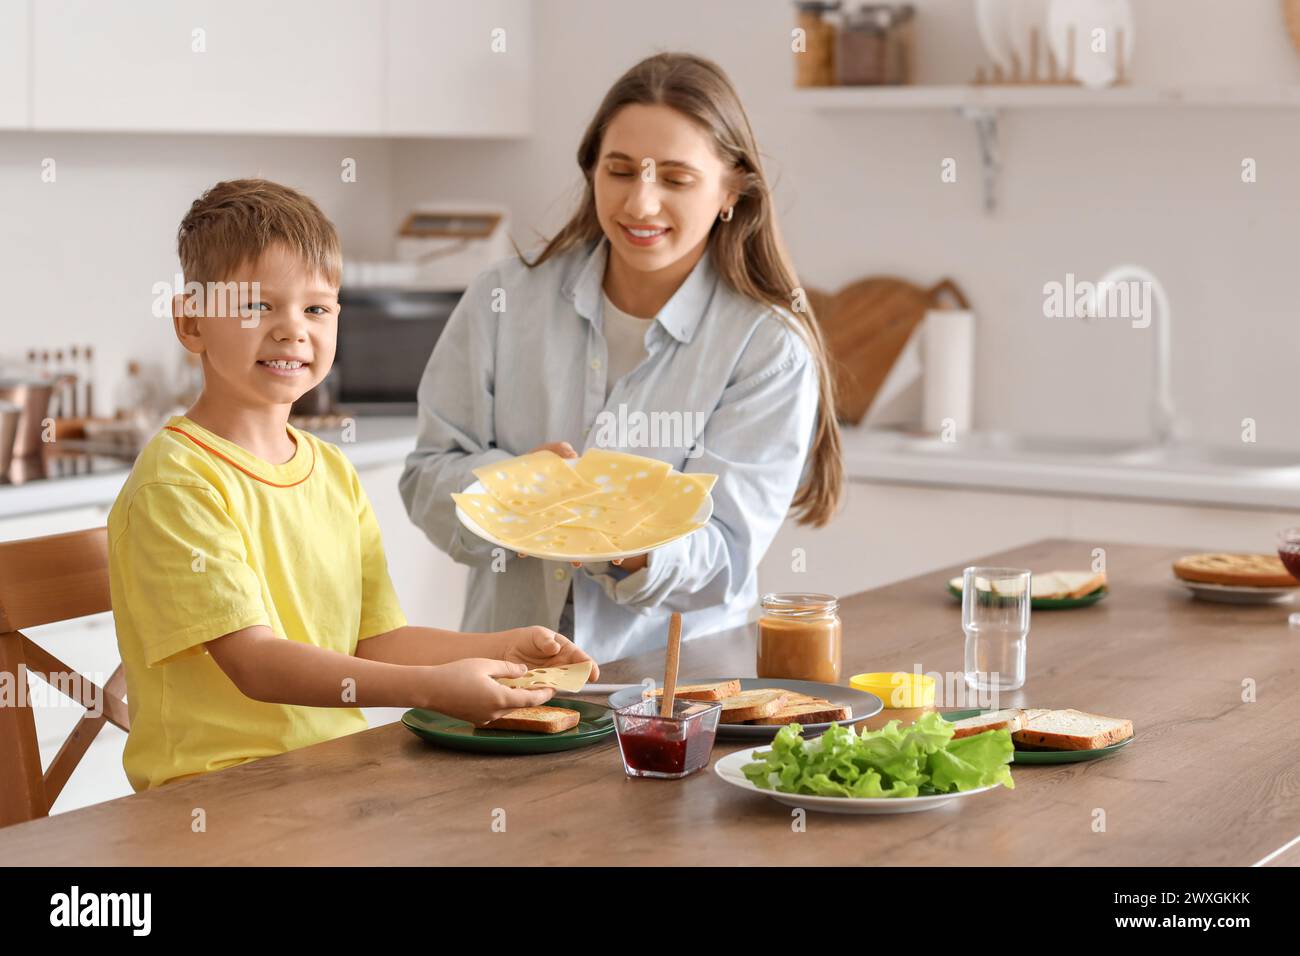 Lindo niño pequeño y su madre haciendo tostadas con queso en la mesa en la cocina Foto de stock